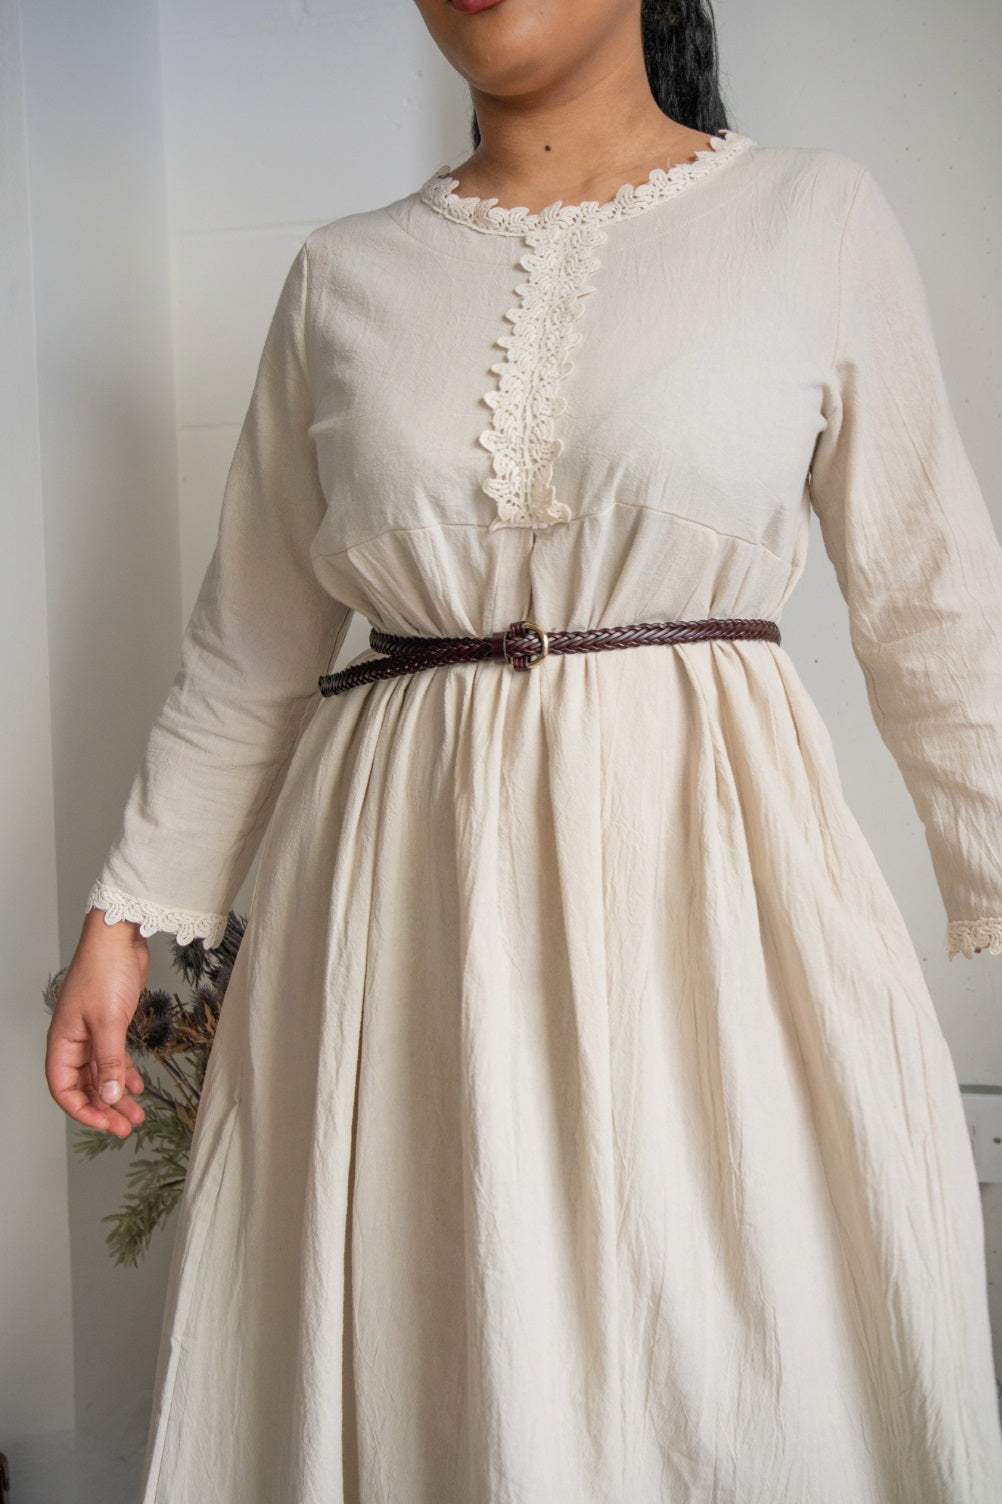 Aspen Cotton Cottage Dress